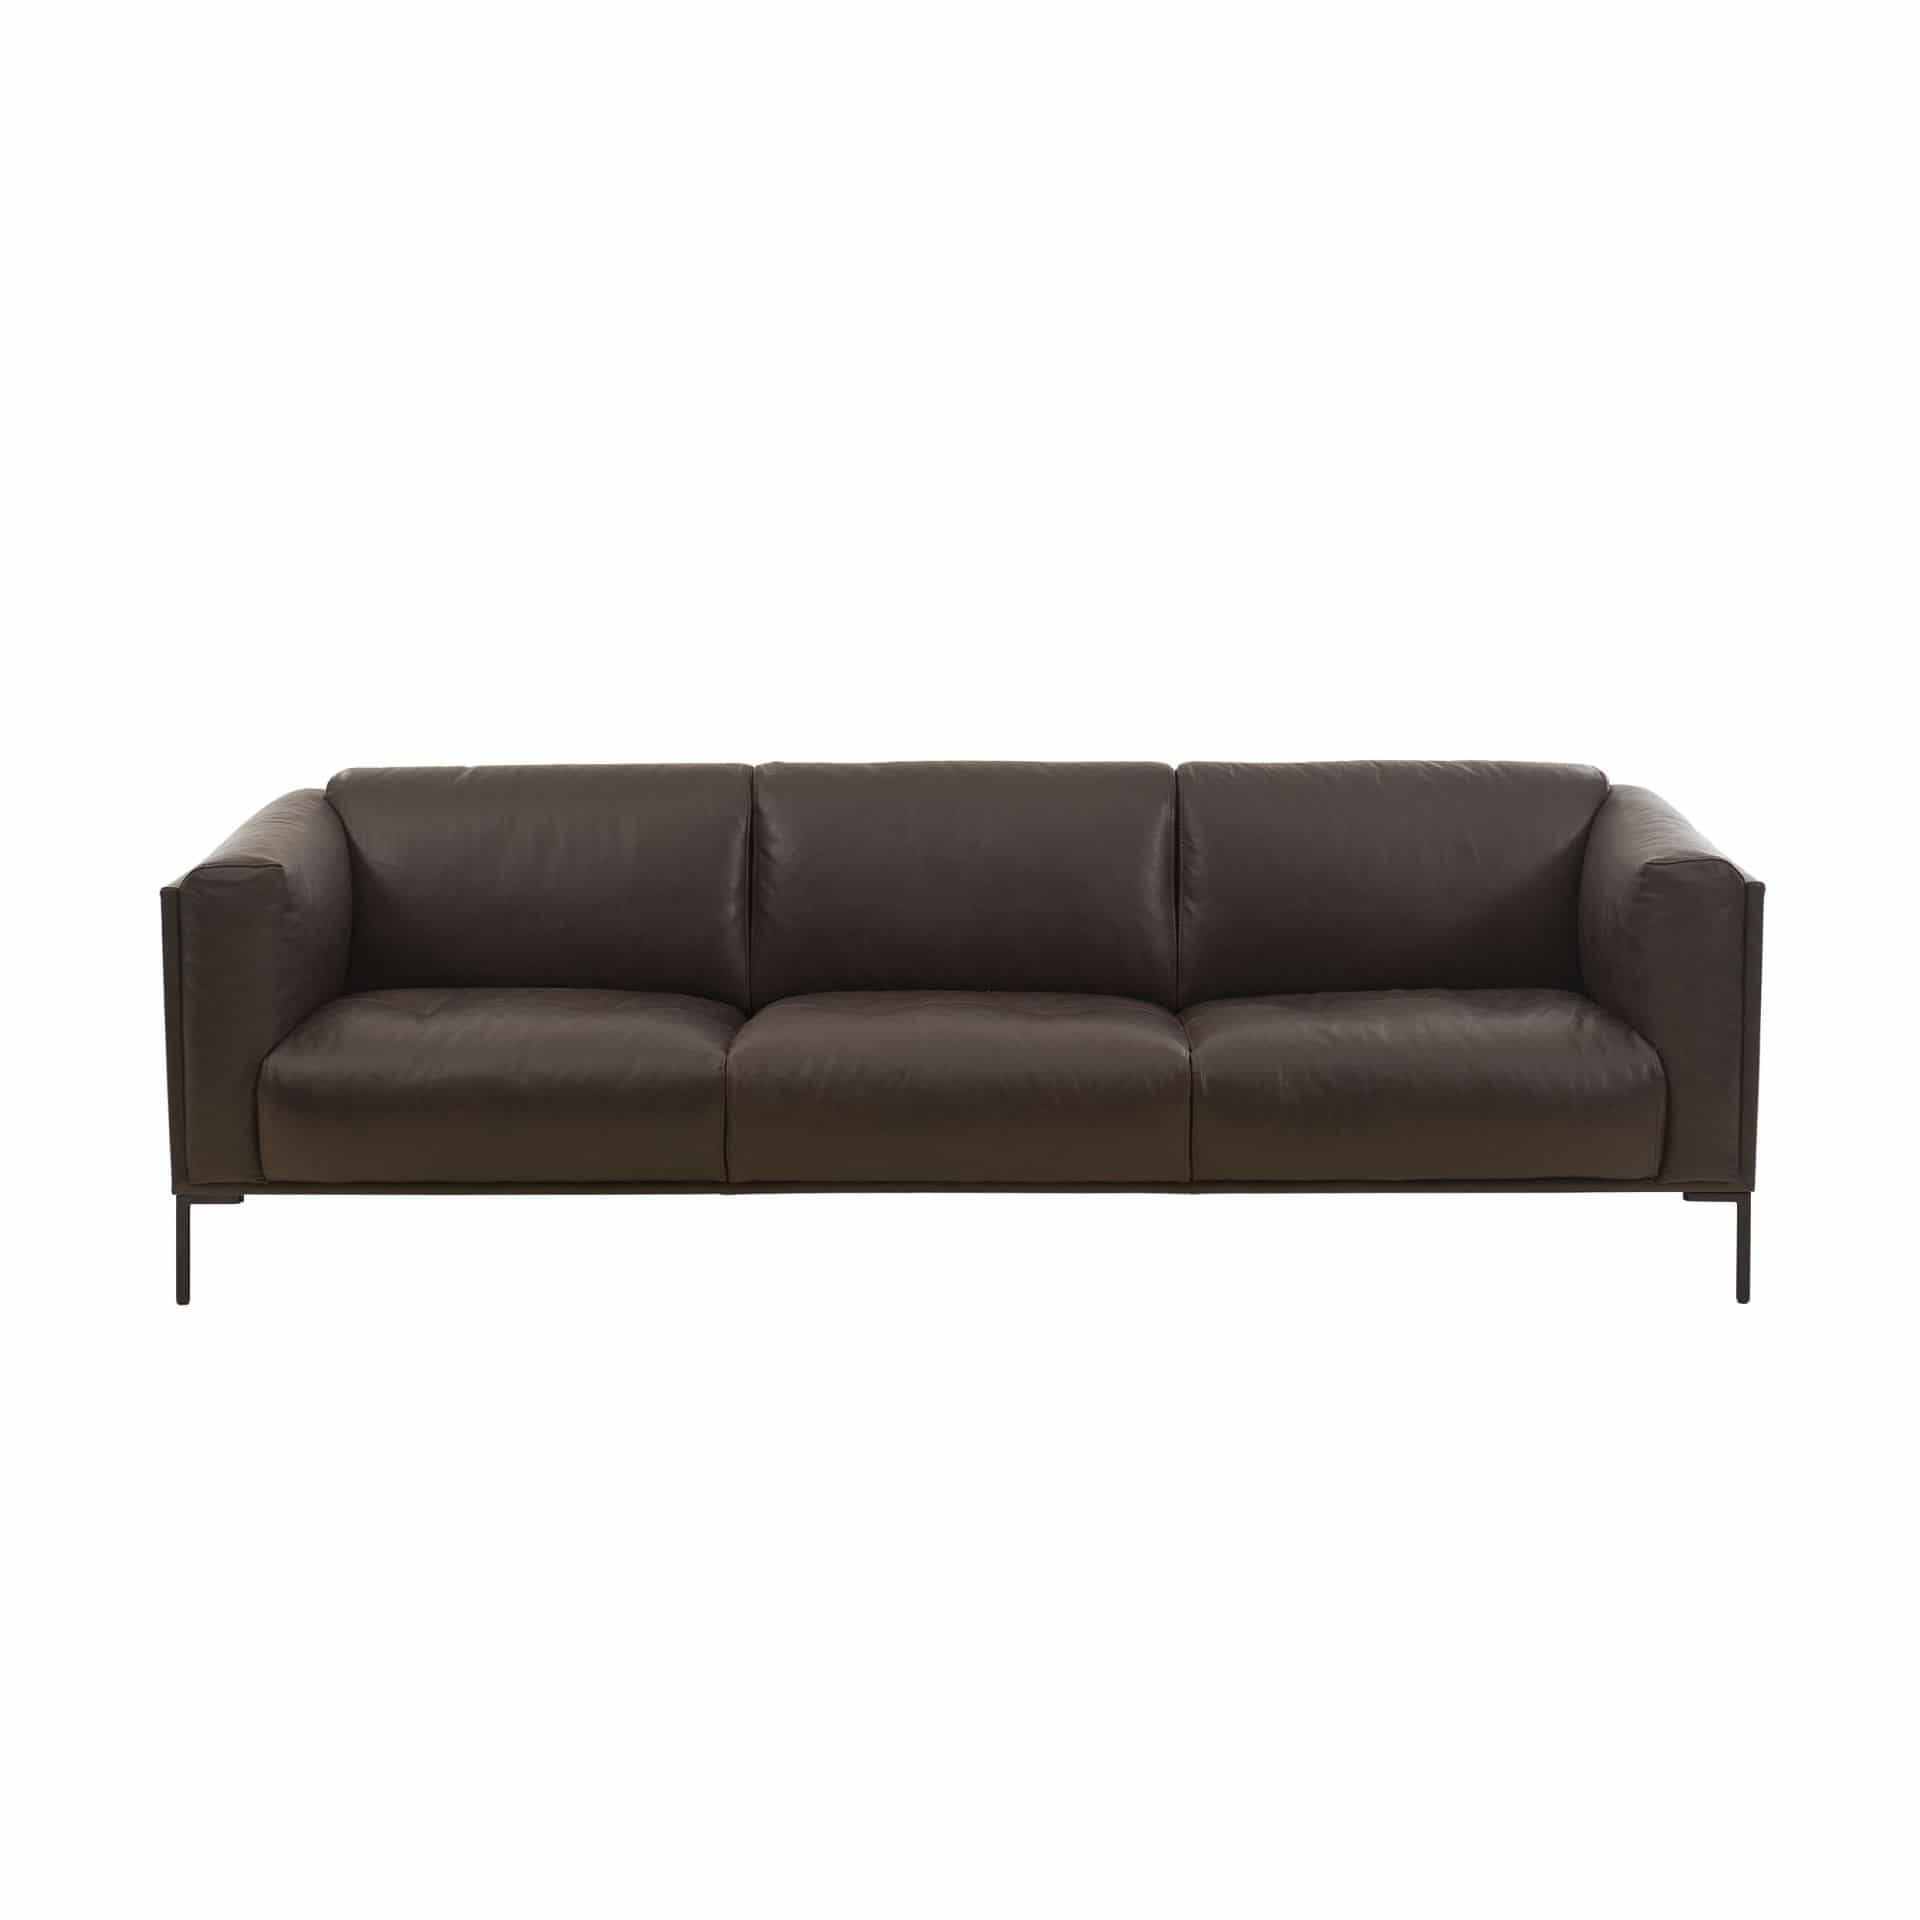 Benoni Leder Maxi 3-Sitzer Sofa